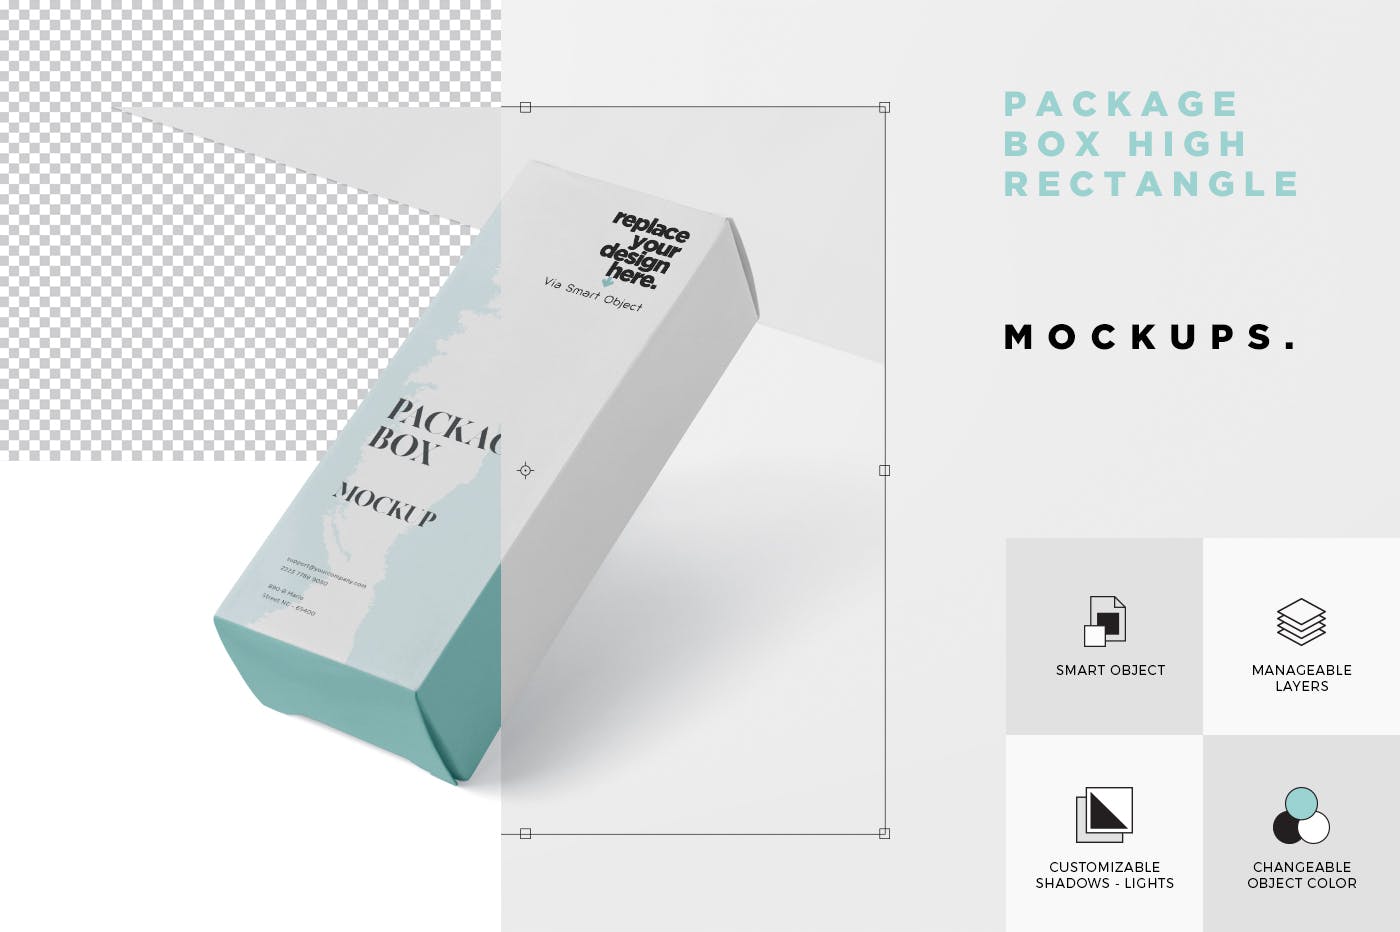 简约风多用途产品包装纸盒设计效果图素材库精选 Package Box Mock-Up – High Rectangle Shape插图(5)